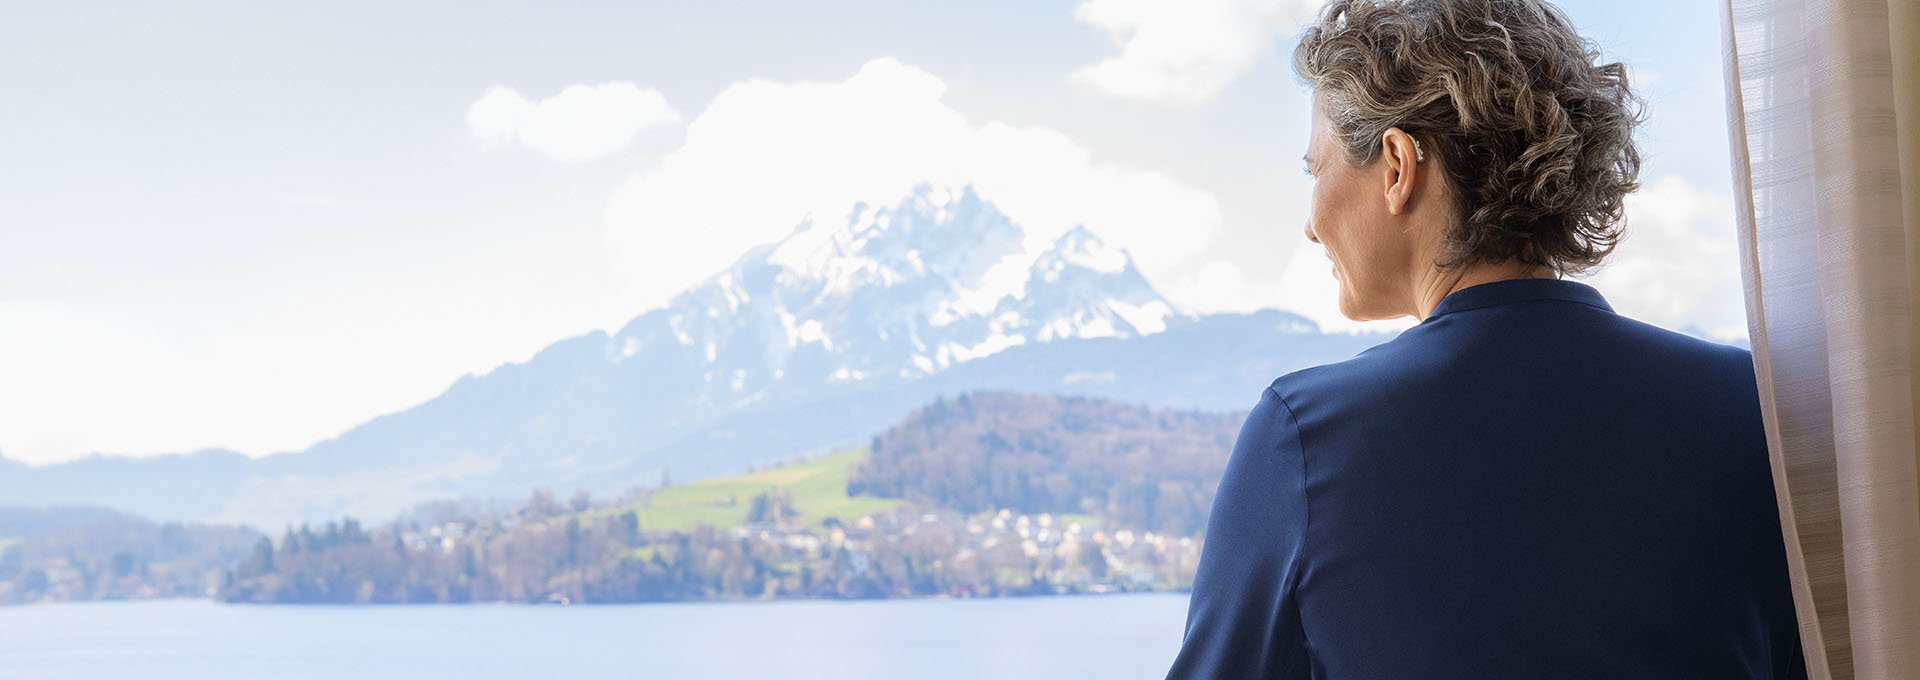 Une femme portant des aides auditives rechargeables Bernafon Alpha profite de la vue sur le lac et les montagnes suisses depuis la fenêtre de son hôtel.